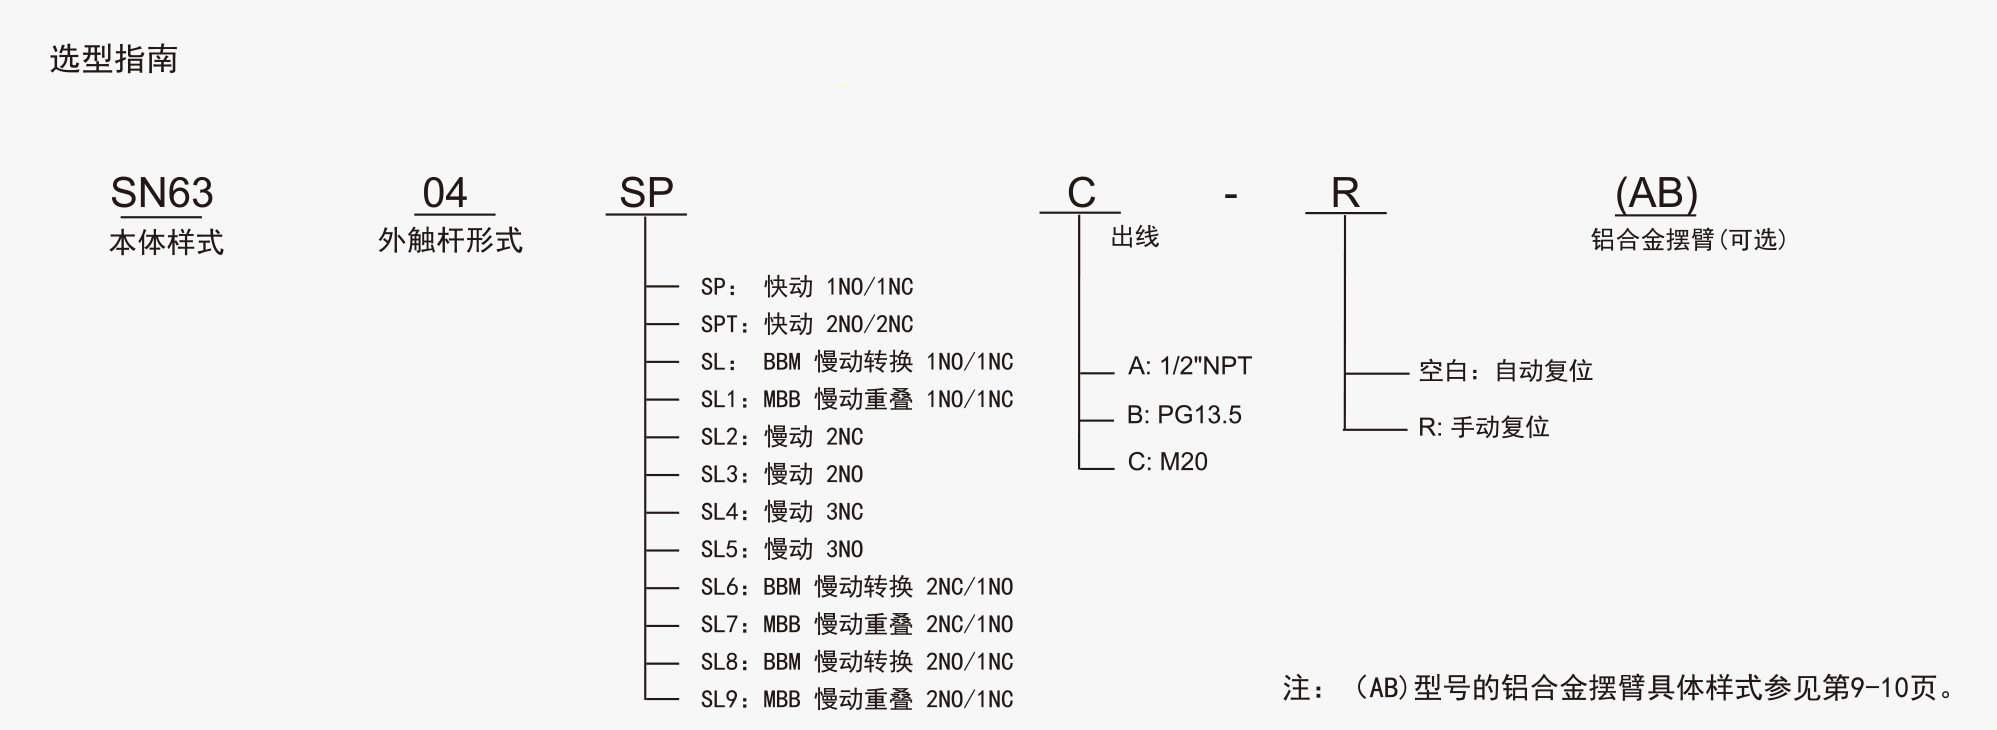 SN63 系列选型指南.jpg